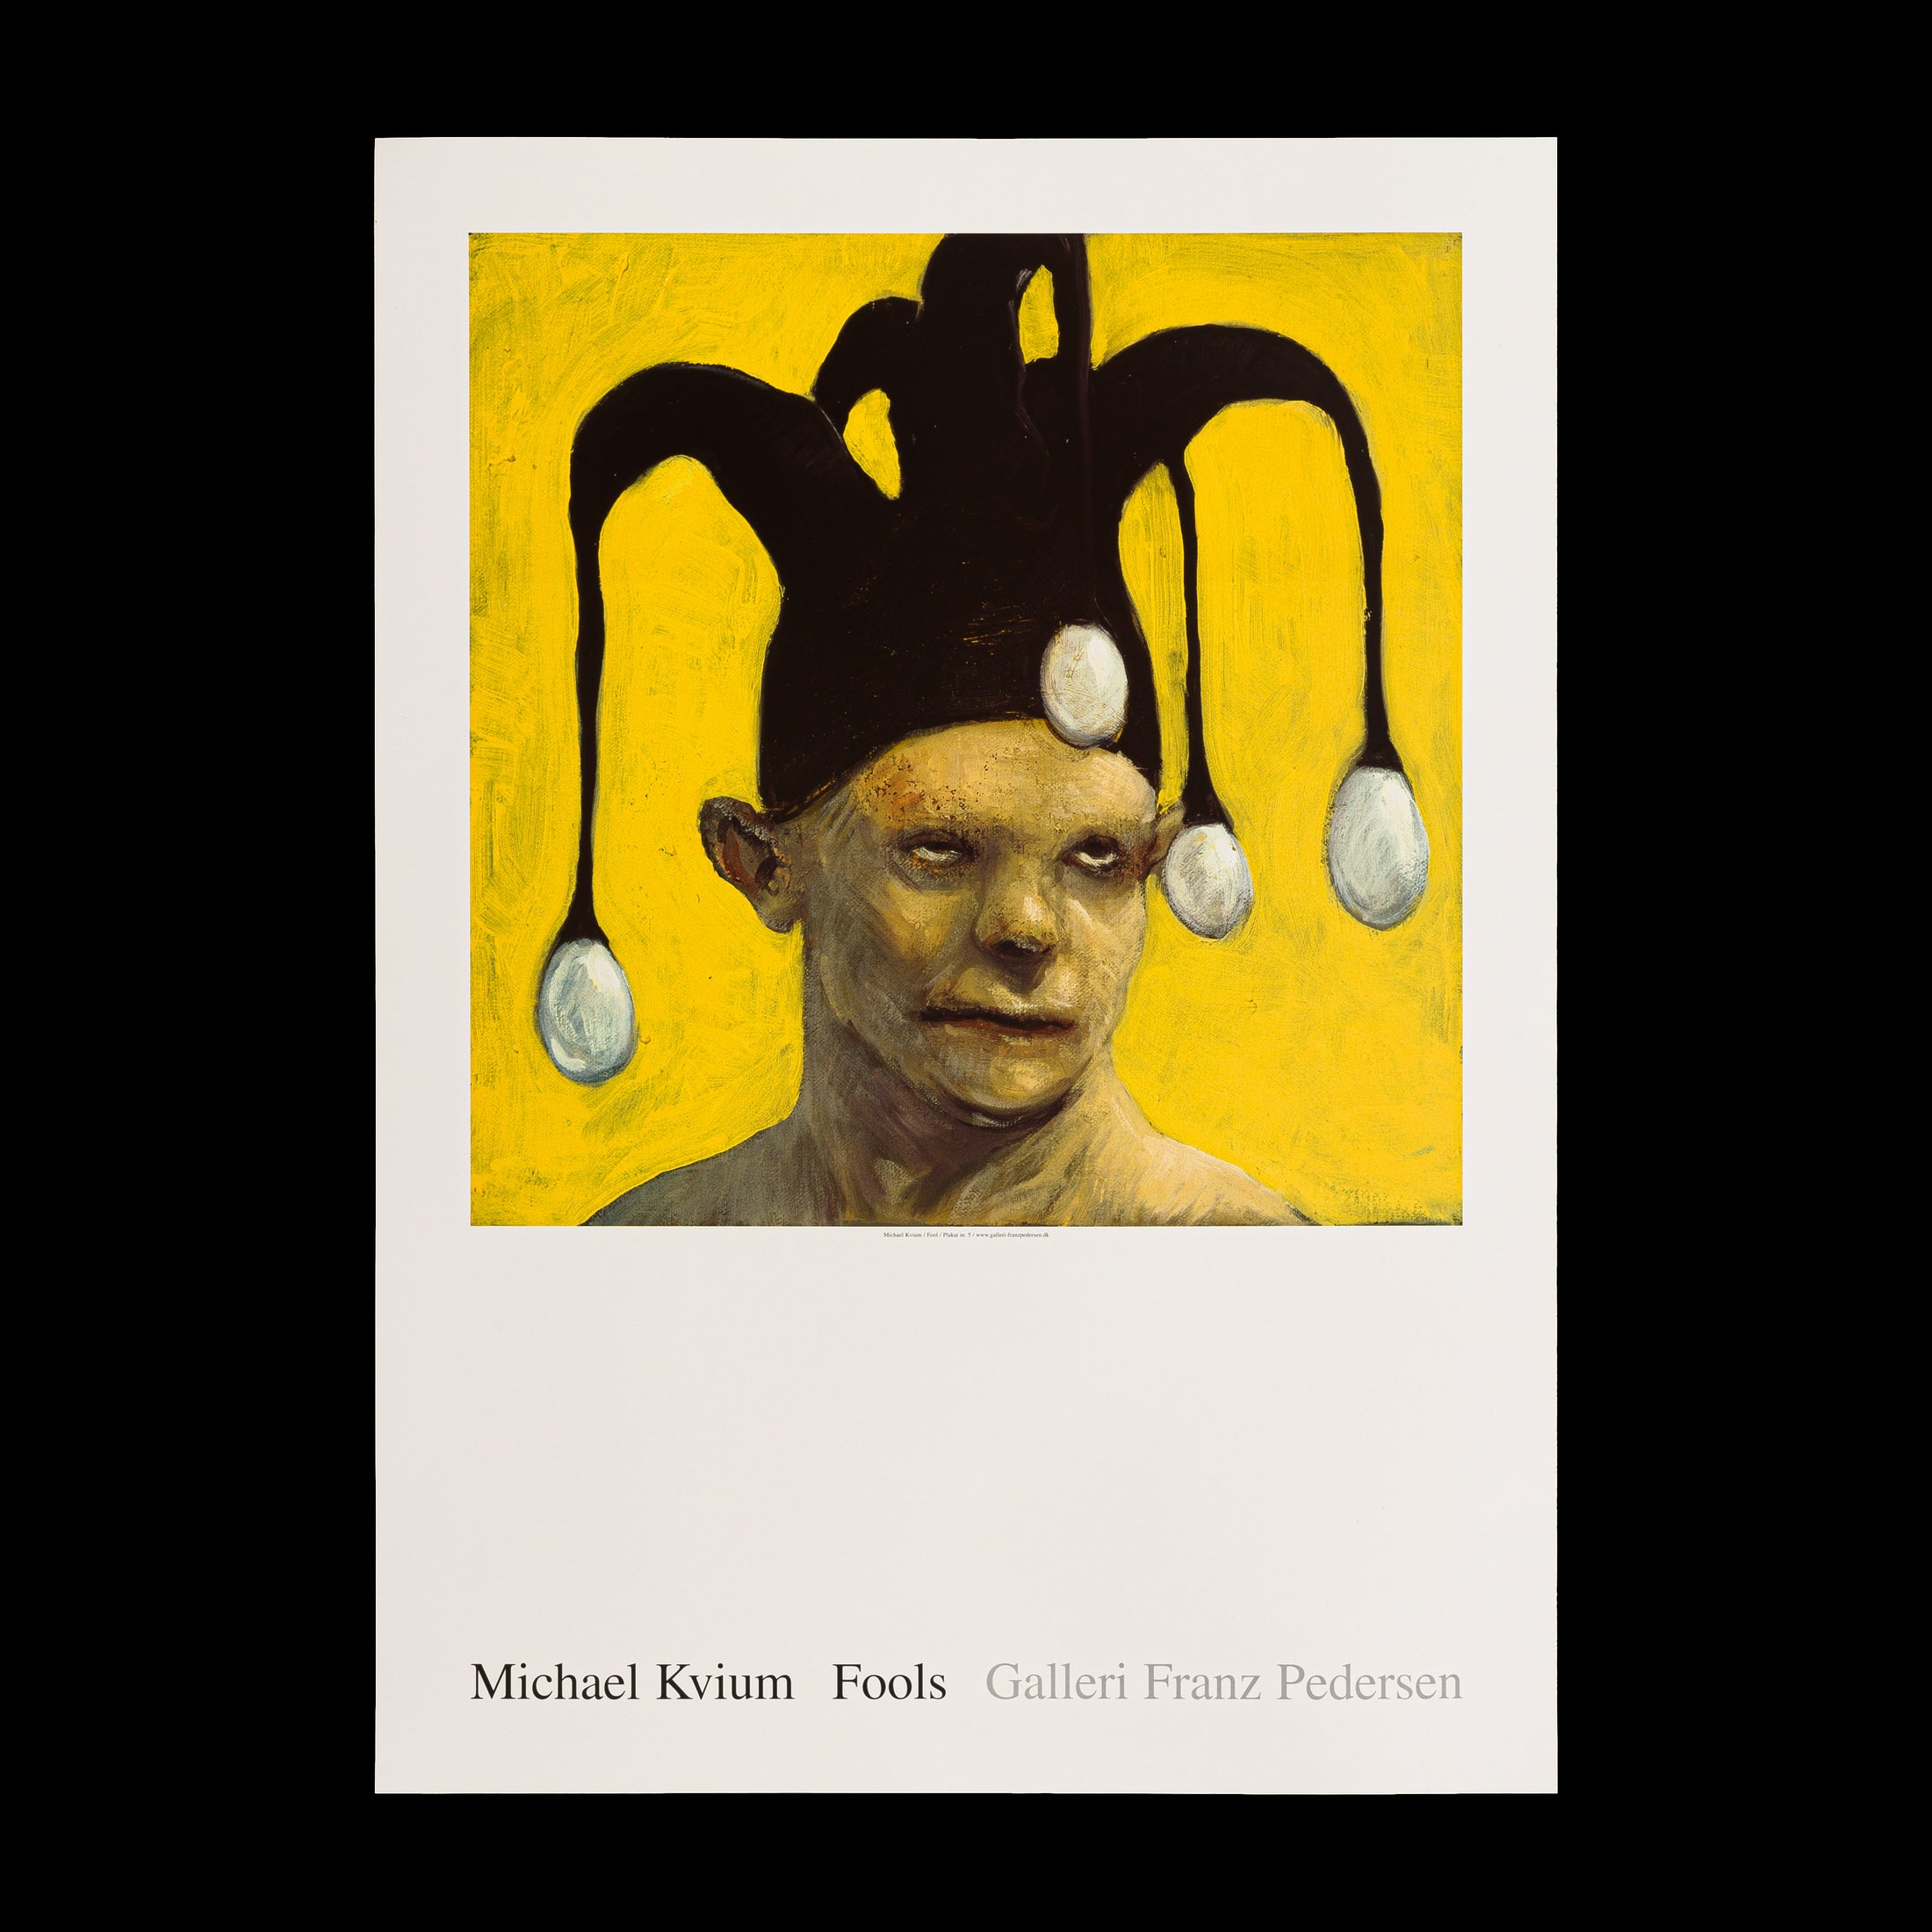 Plakat af Michael Kviums Fool no. 48, som viser en skikkelse med en narrekrone og reflekterende blik, der udforsker menneskets indre og sociale masker.